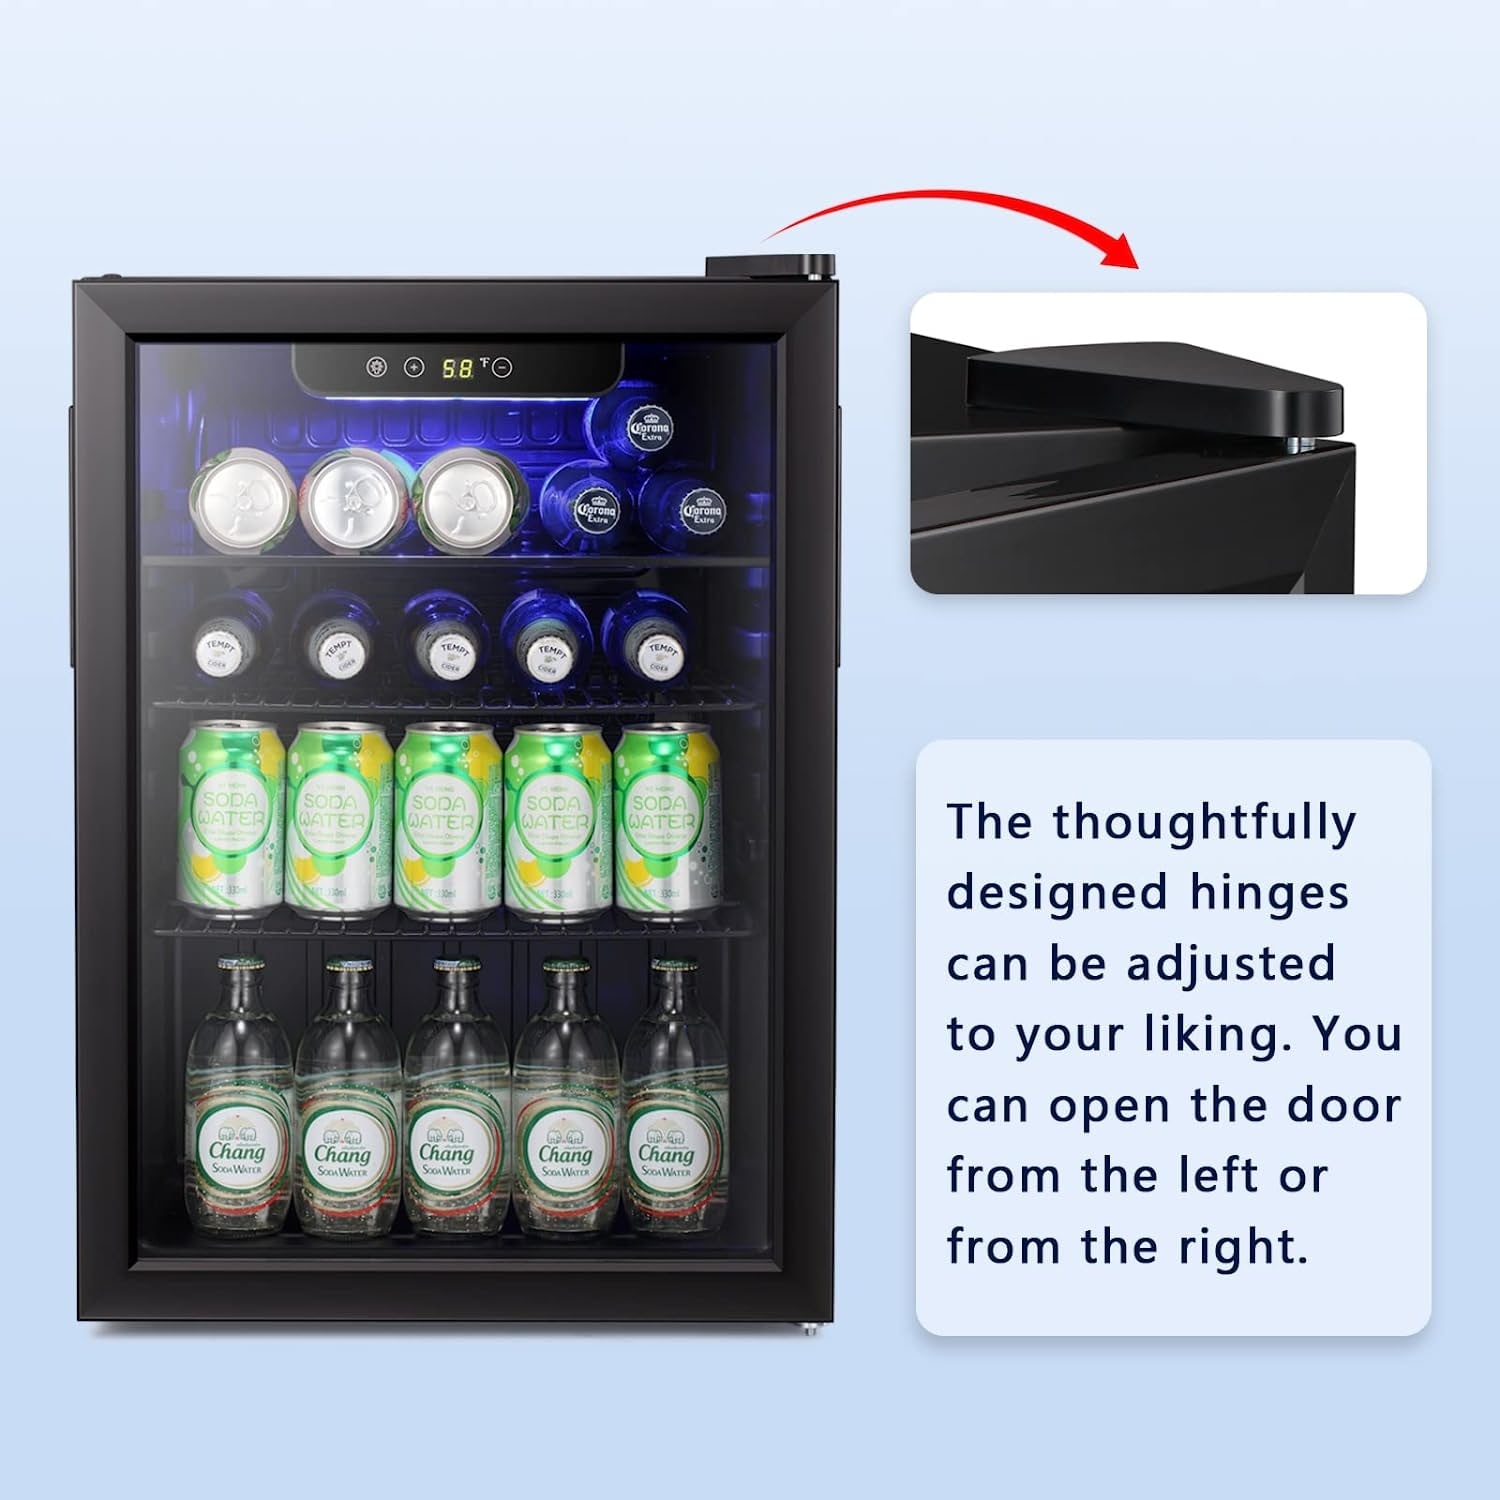 Danby DAR044A6DDB Contemporary Classic 4.4 Cu.Ft. Mini Fridge, Compact  Refrigerator for Bedroom, Living Room, Bar, Dorm, Kitchen & BLACK+DECKER